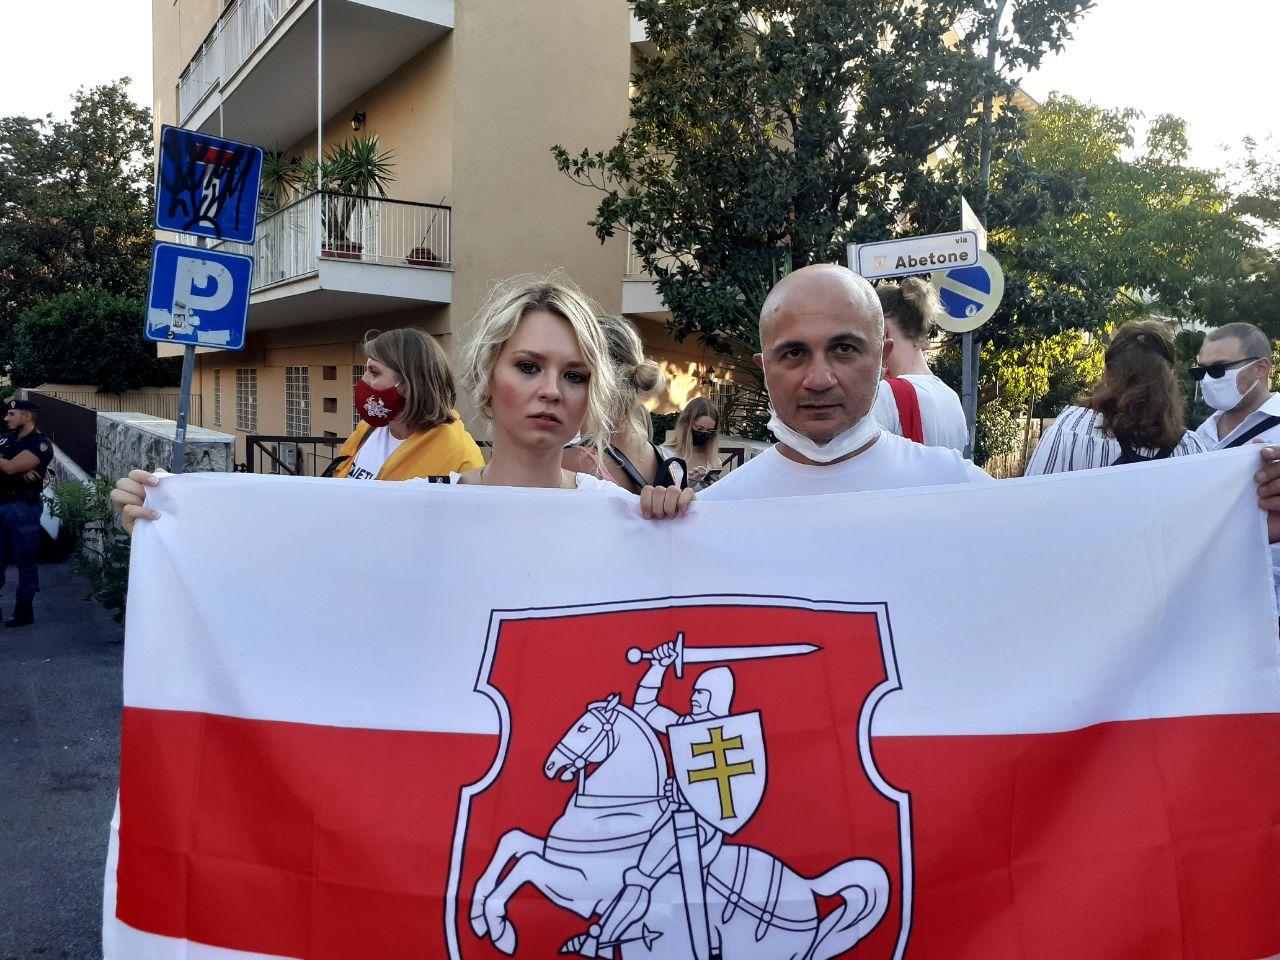 Акция солидарности белорусов в Риме. Фото